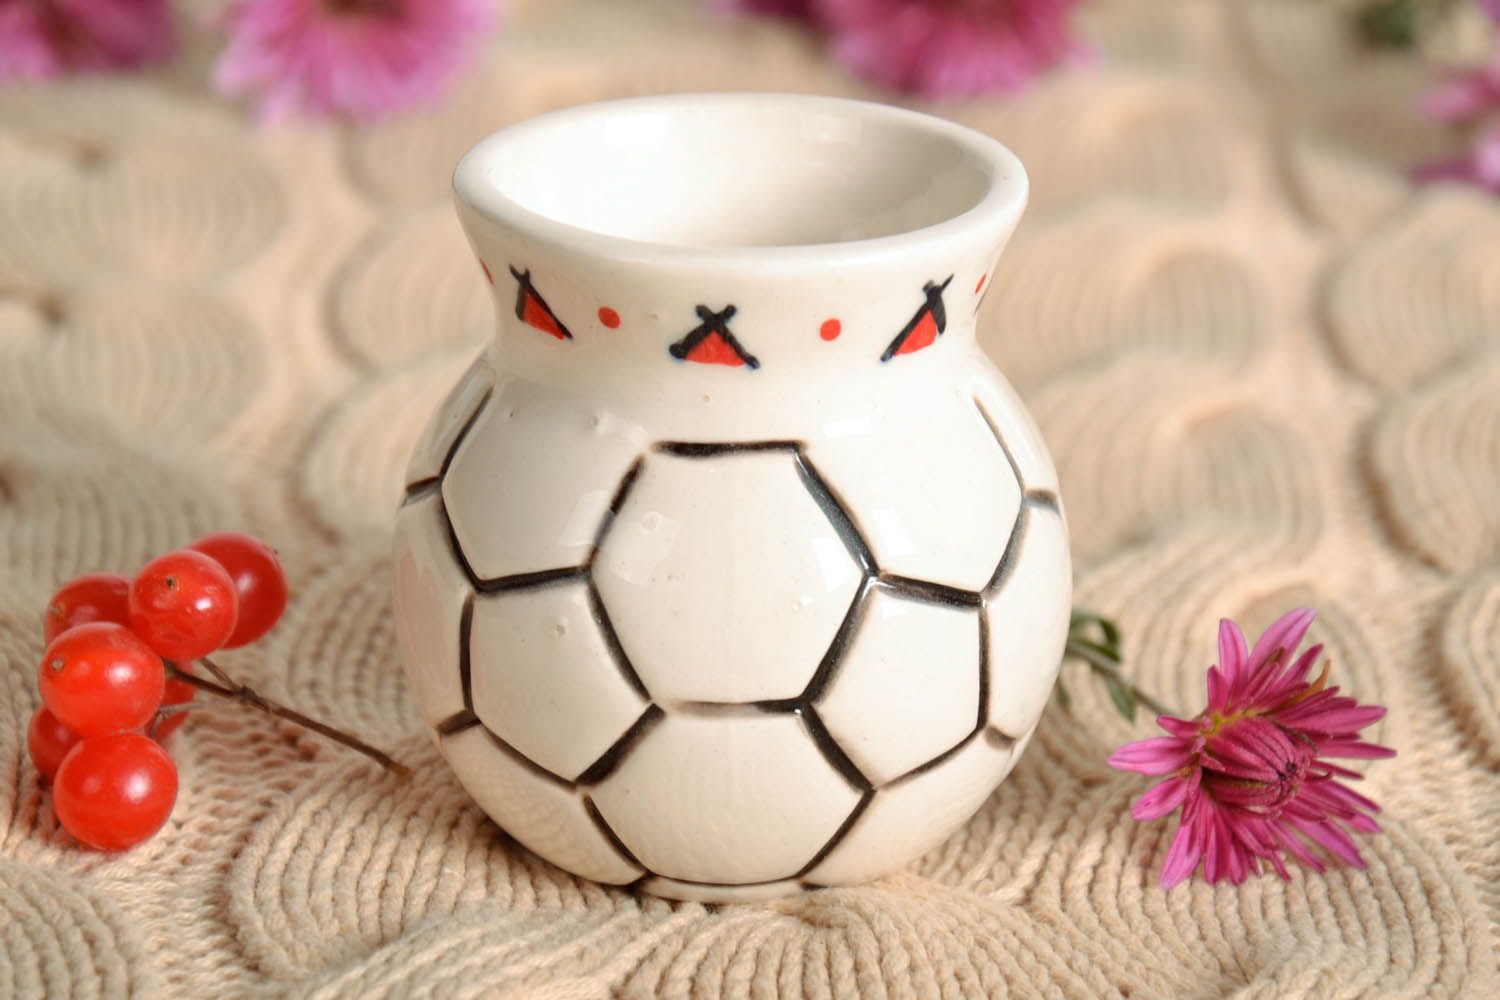 3-inch ceramic vase in the shape of soccer ball 0,26 lb photo 1